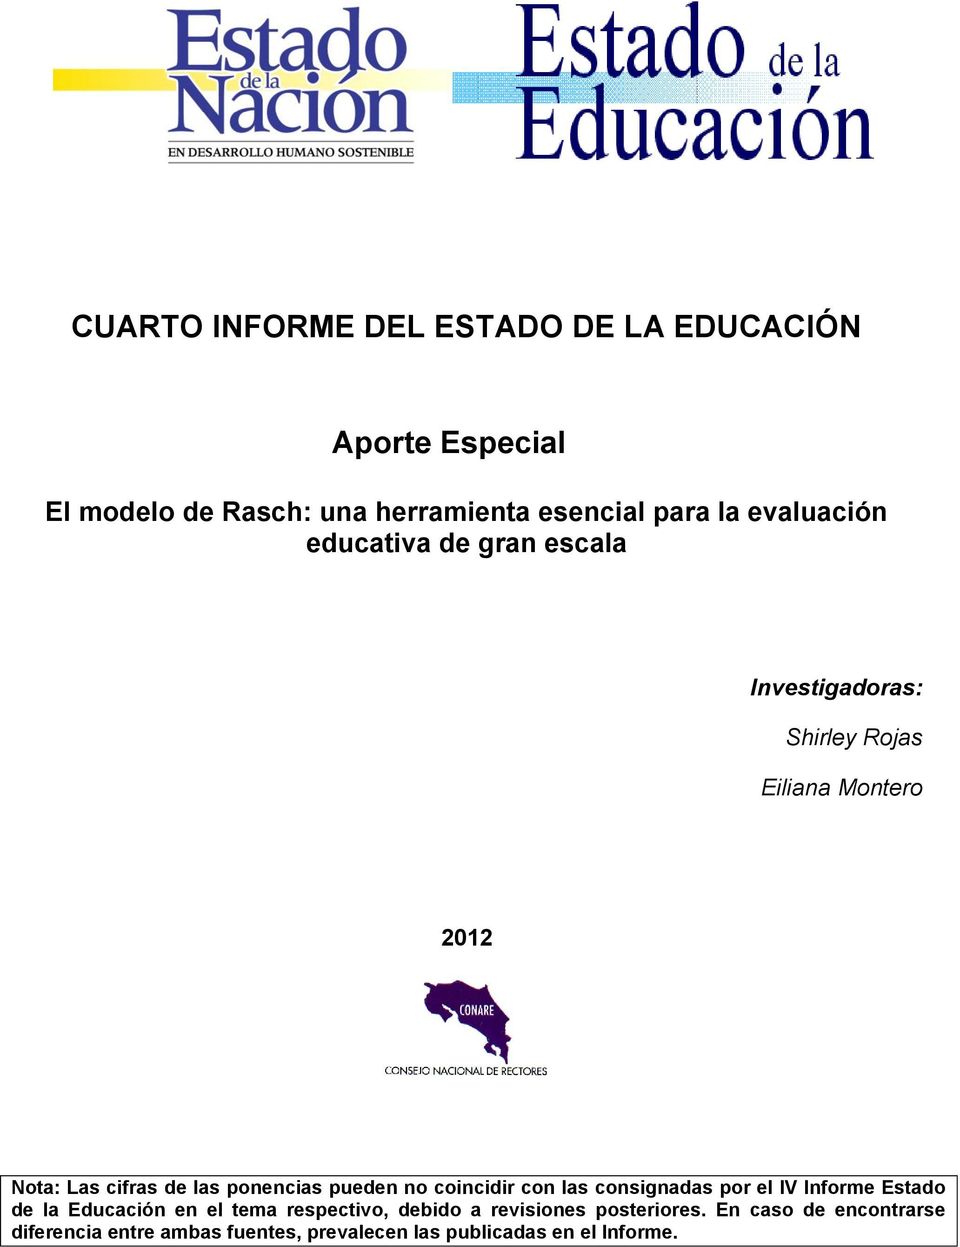 ponencias pueden no coincidir con las consignadas por el IV Informe Estado de la Educación en el tema respectivo,